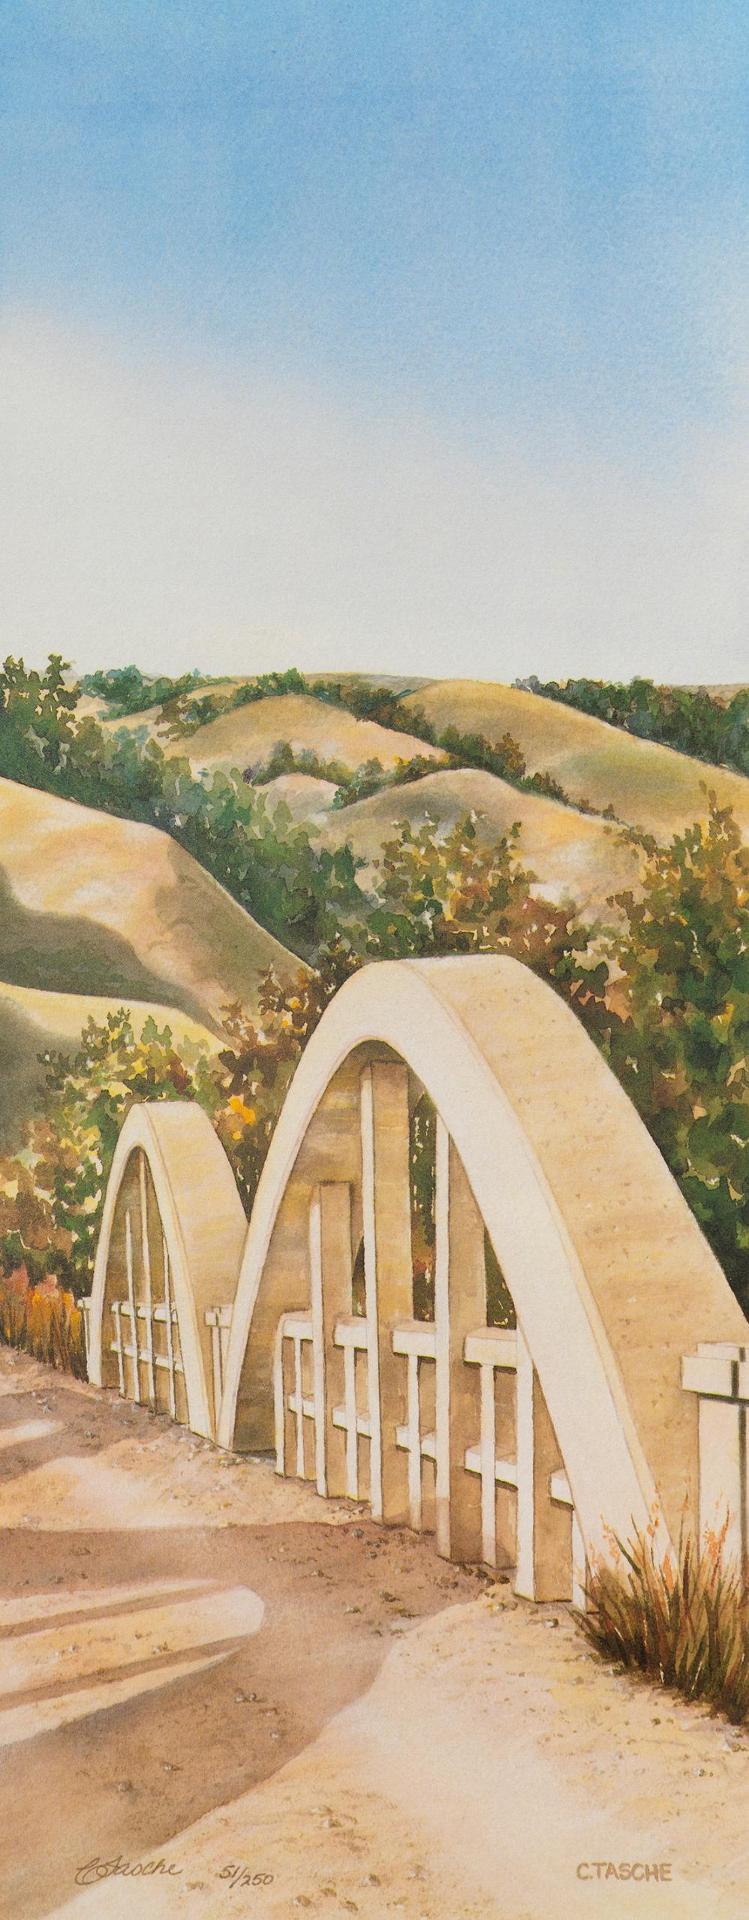 Cyndi Tasche - Rural Bridge